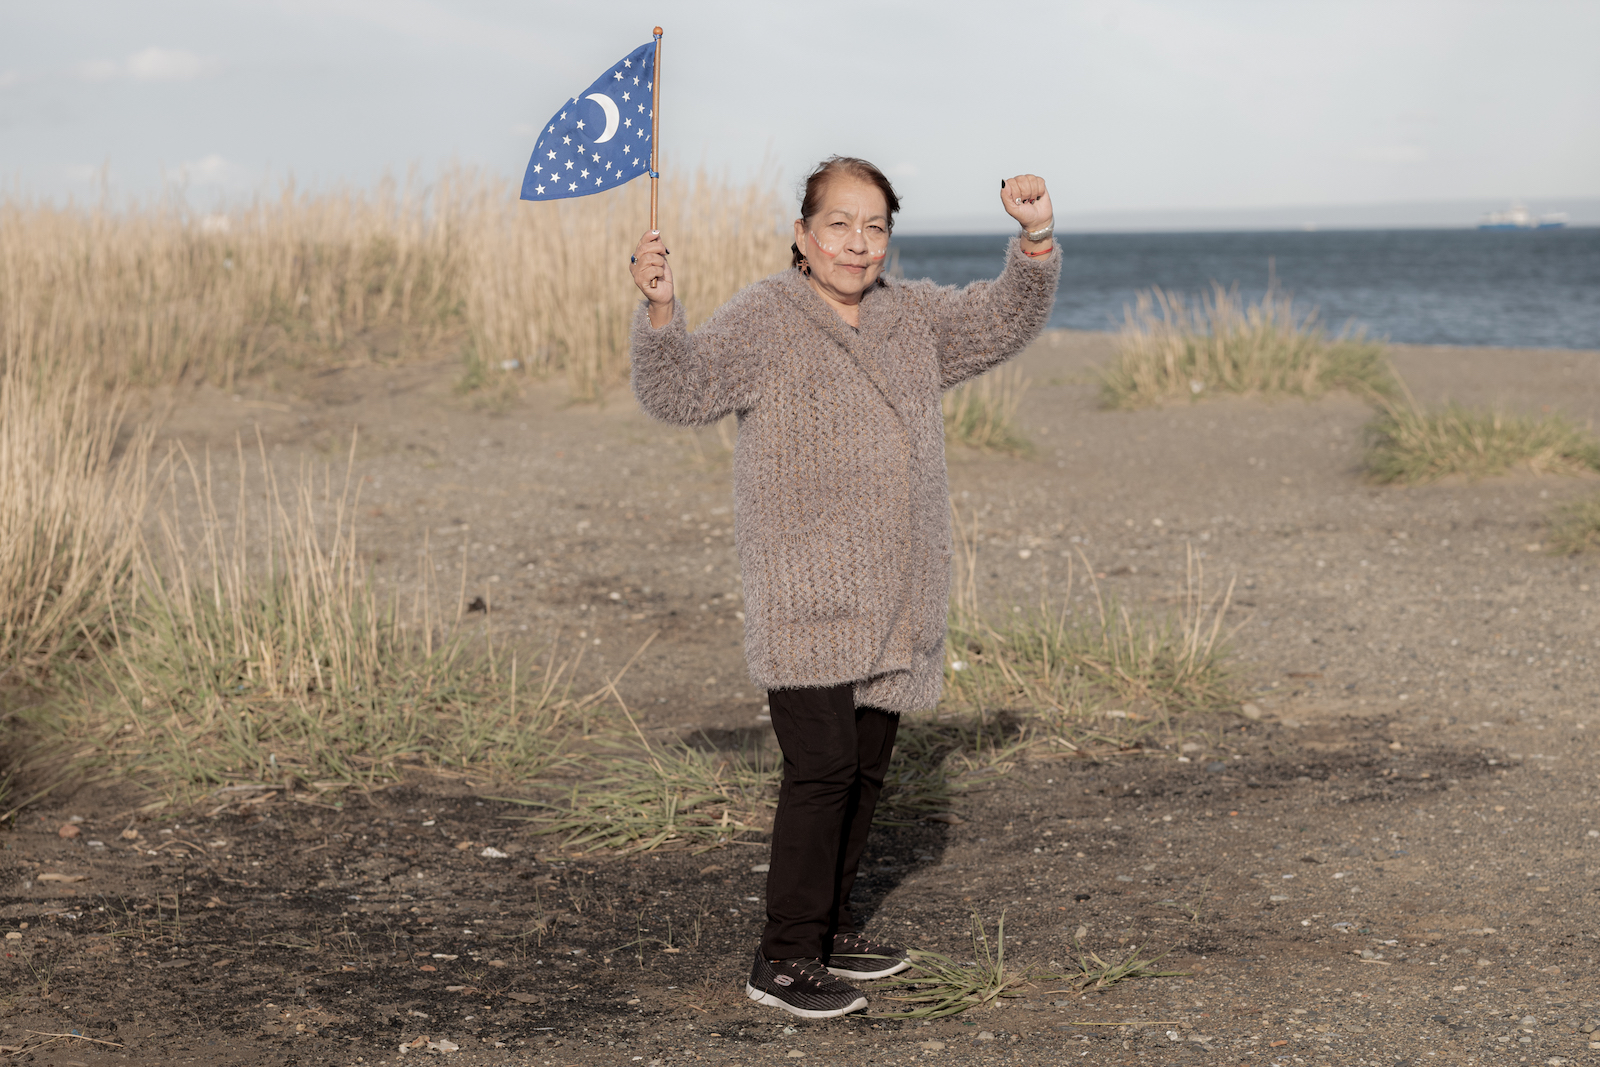 A orillas del Estrecho de Magallanes, María Margarita Vásquez Choque (Pilar) sostiene con orgullo la bandera que representa a los Selk'nam y levanta el puño en señal de lucha y resistencia. Punta Arenas, Chile, 2021. Foto: Marcio Pimenta